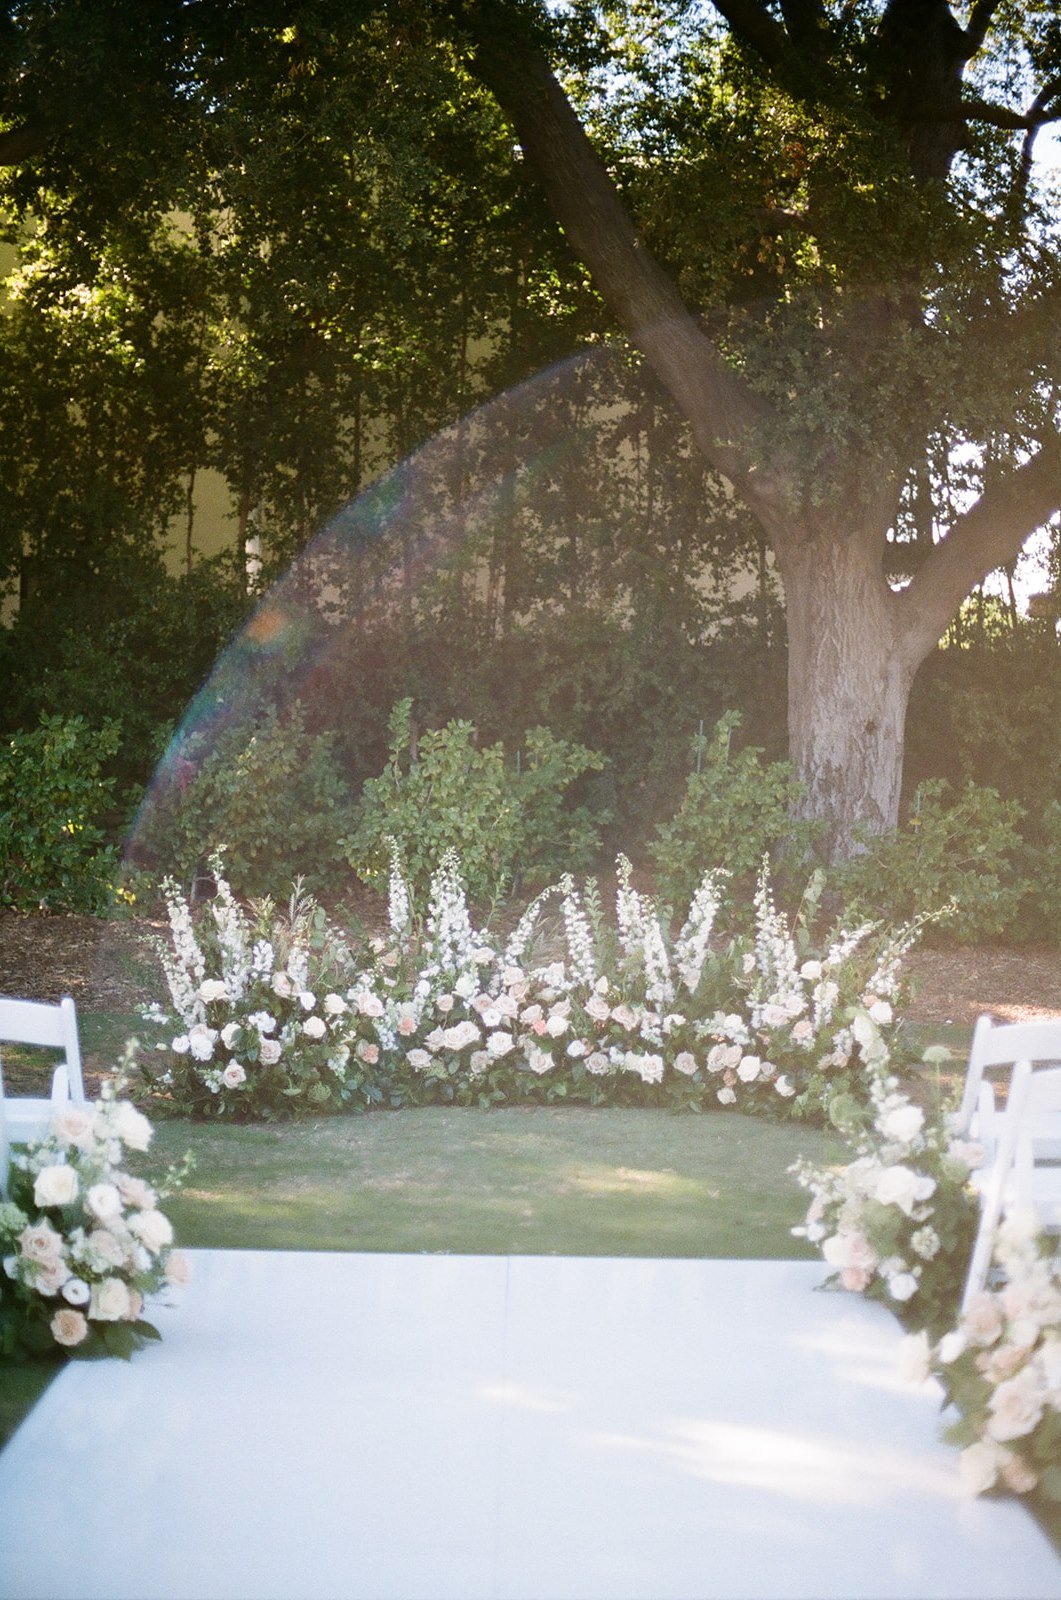 Romantic wedding details and floral arrangements